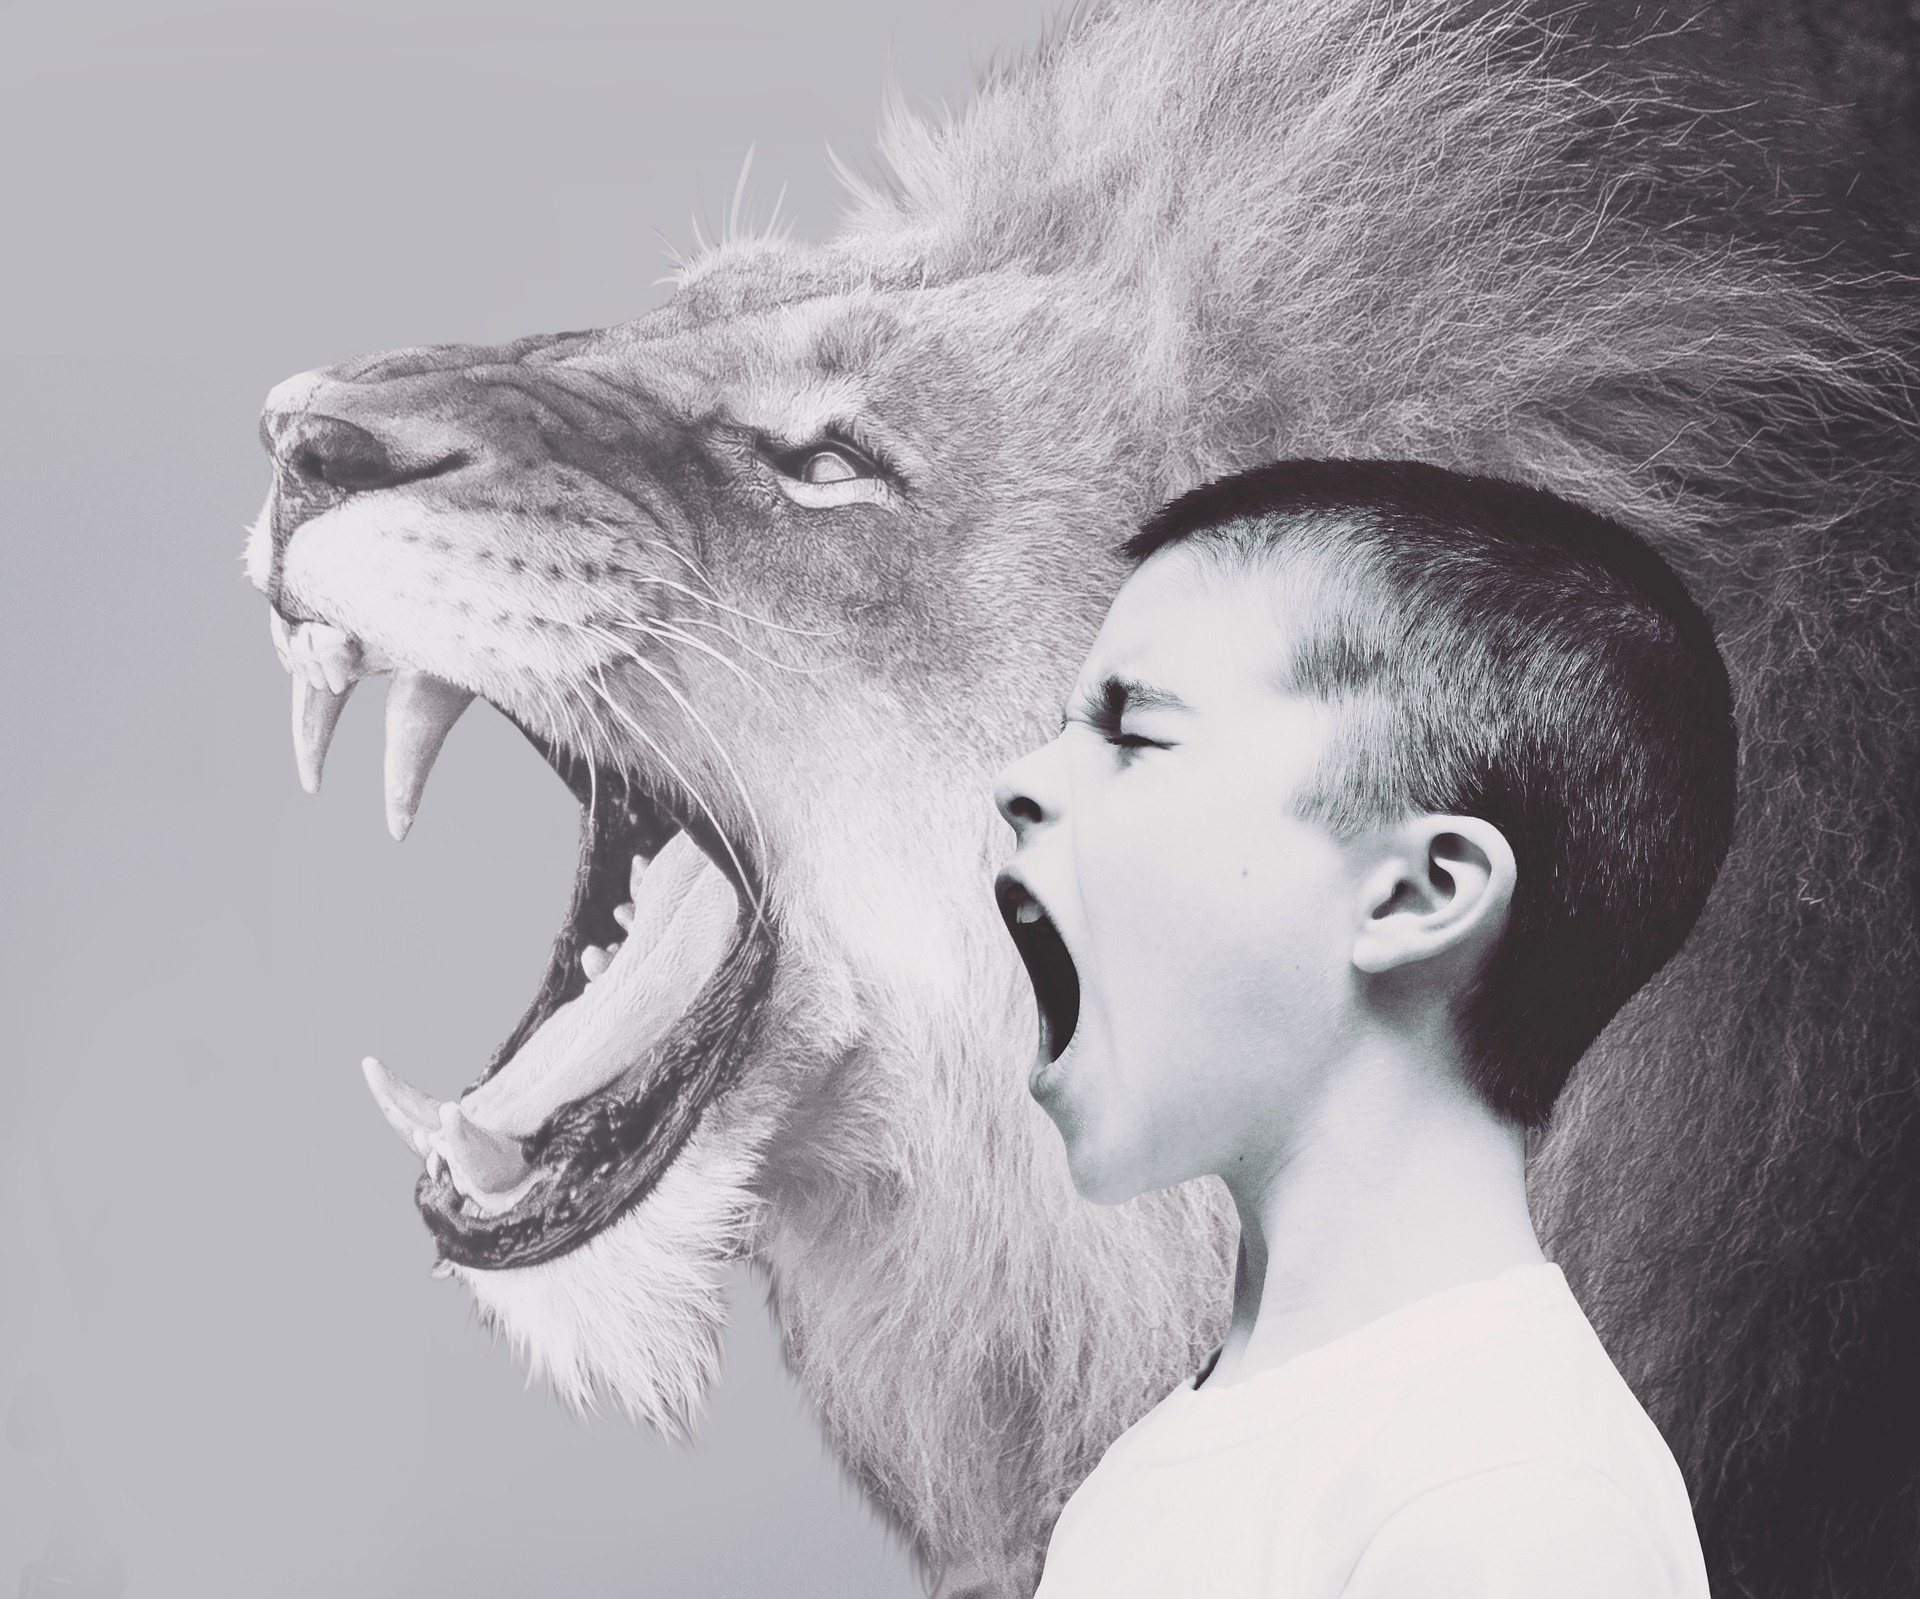 Enfant et lion rugissant